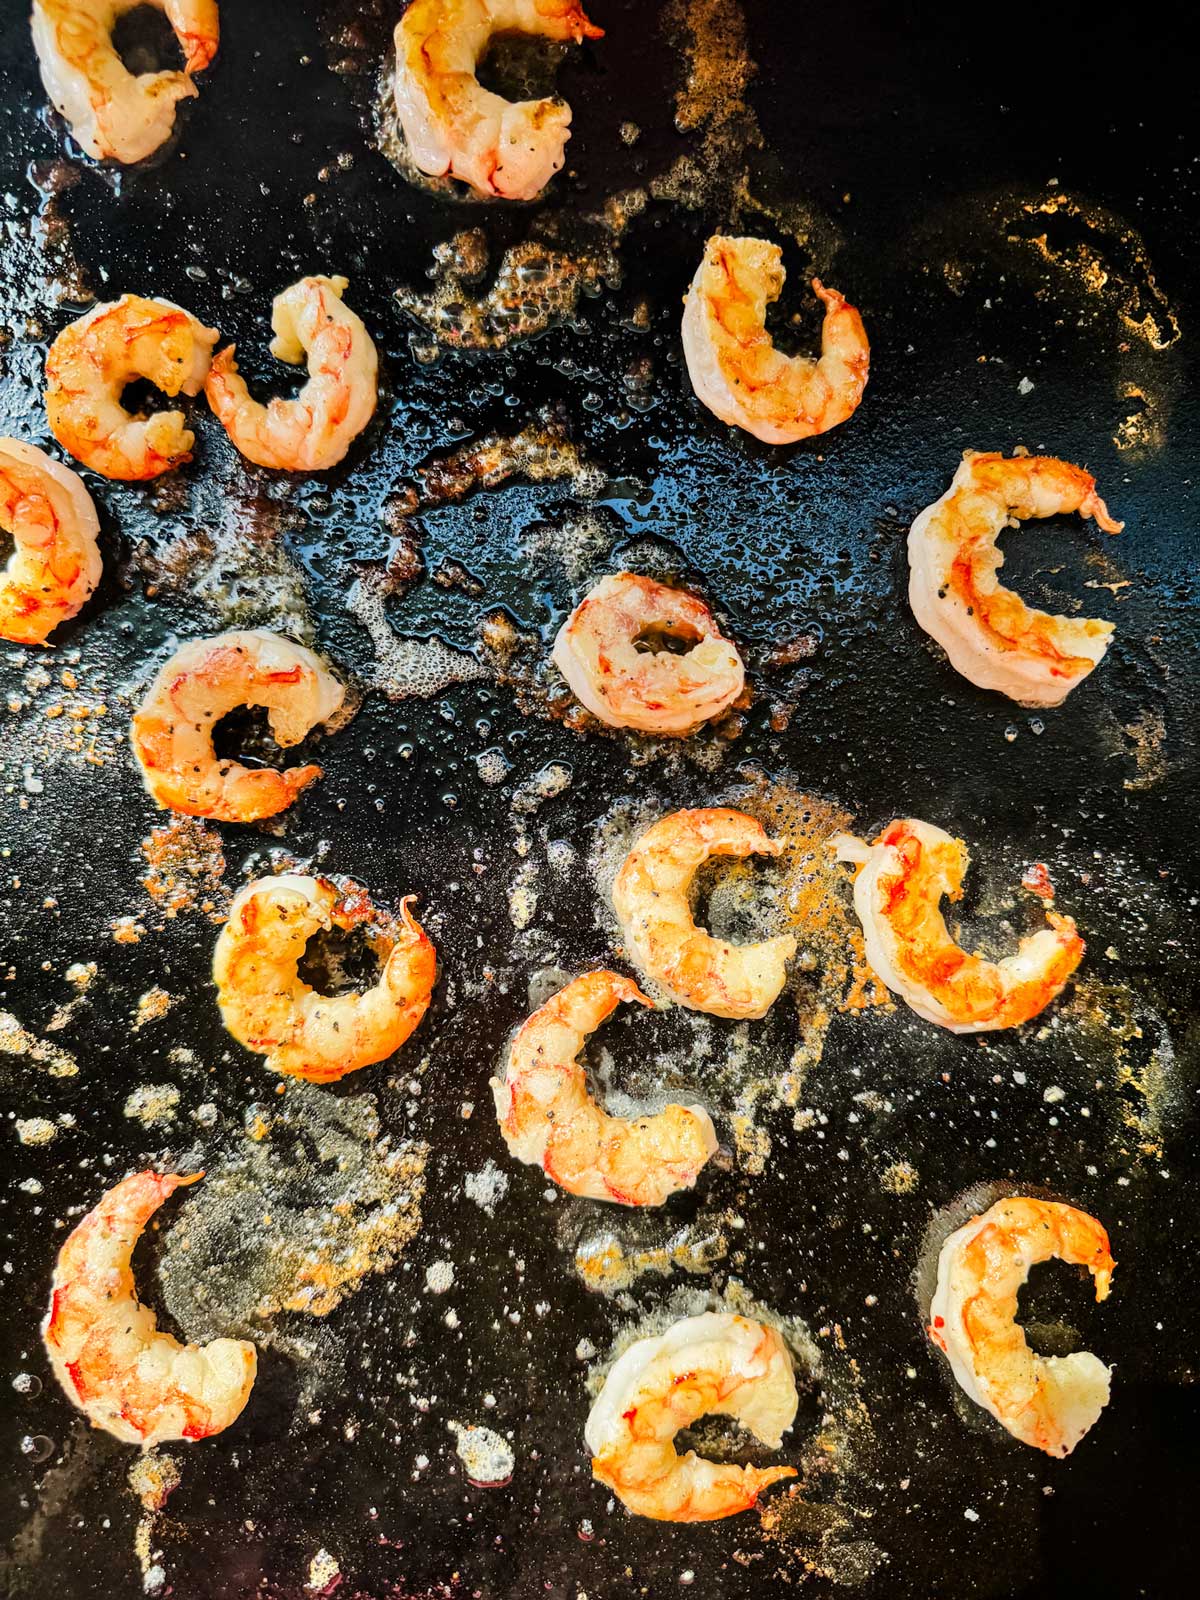 Shrimp cooking on a Blackstone griddle.